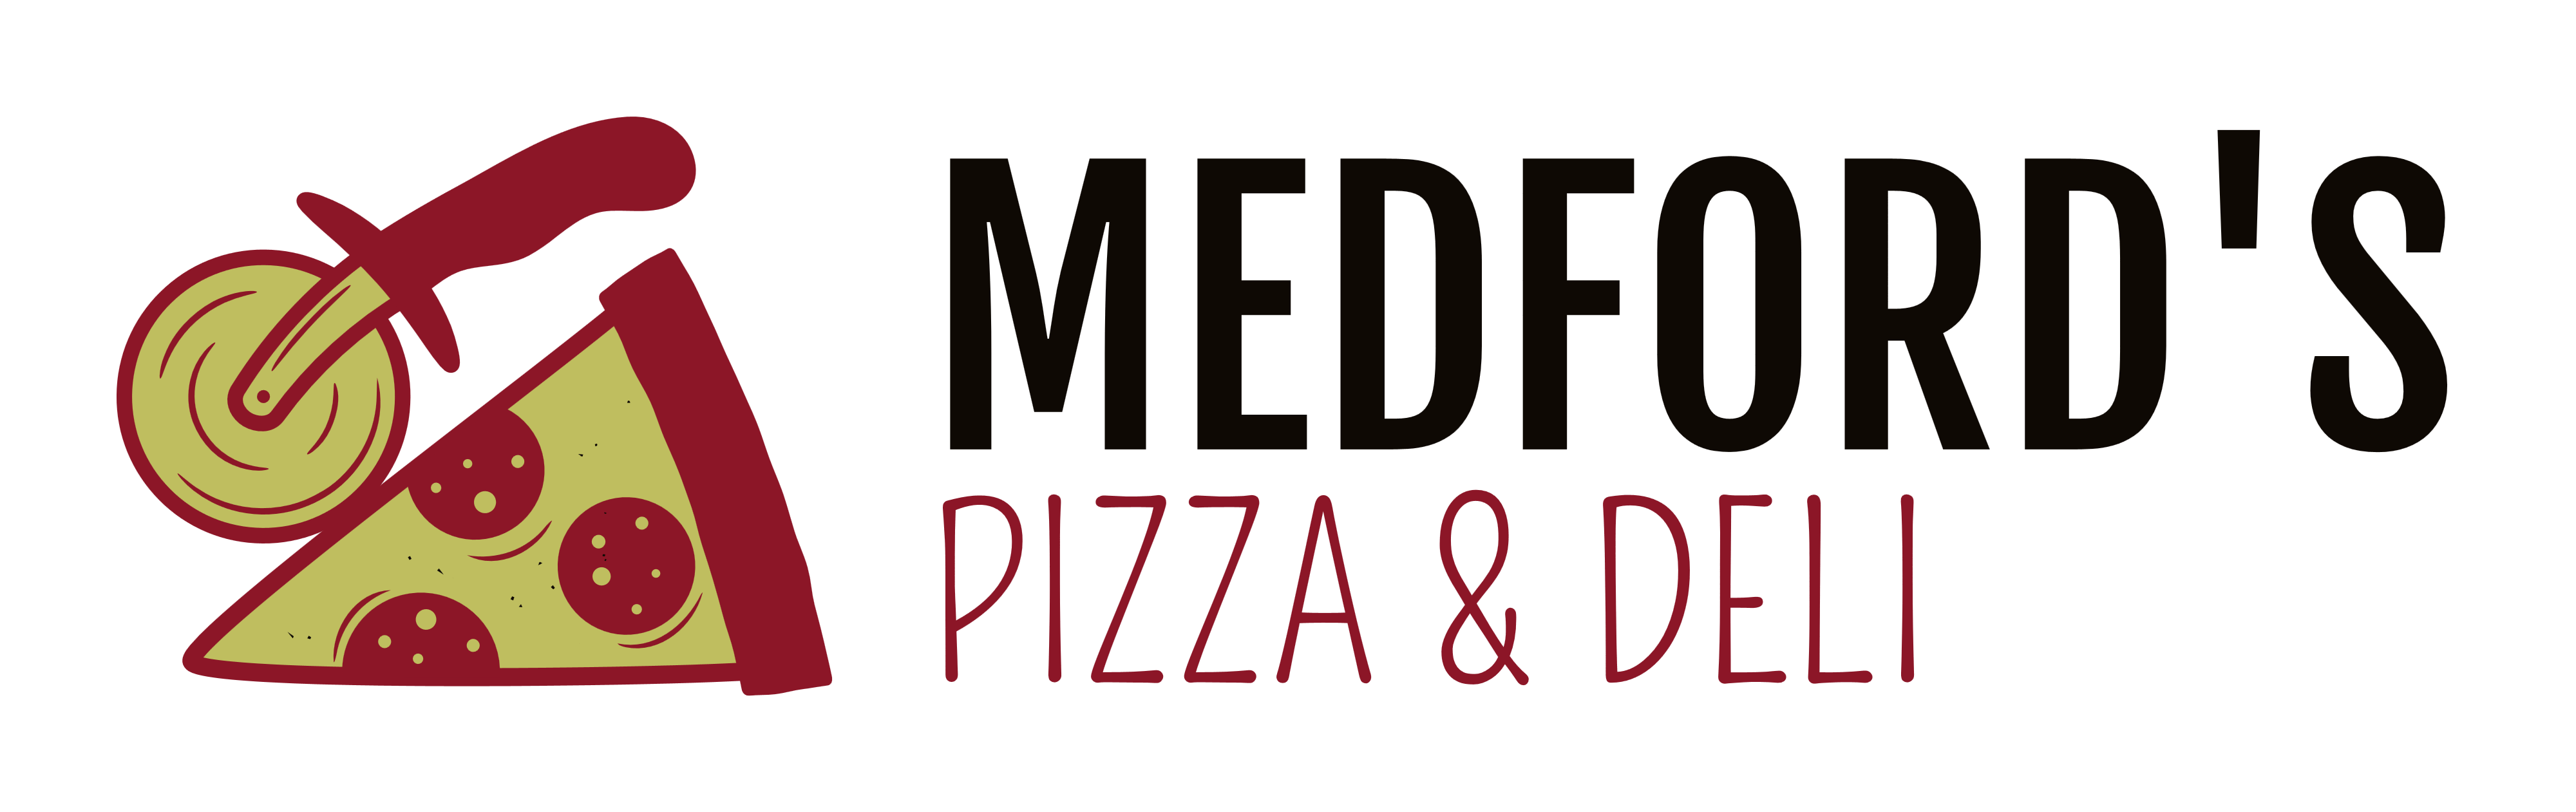 Medford's Pizza Deli